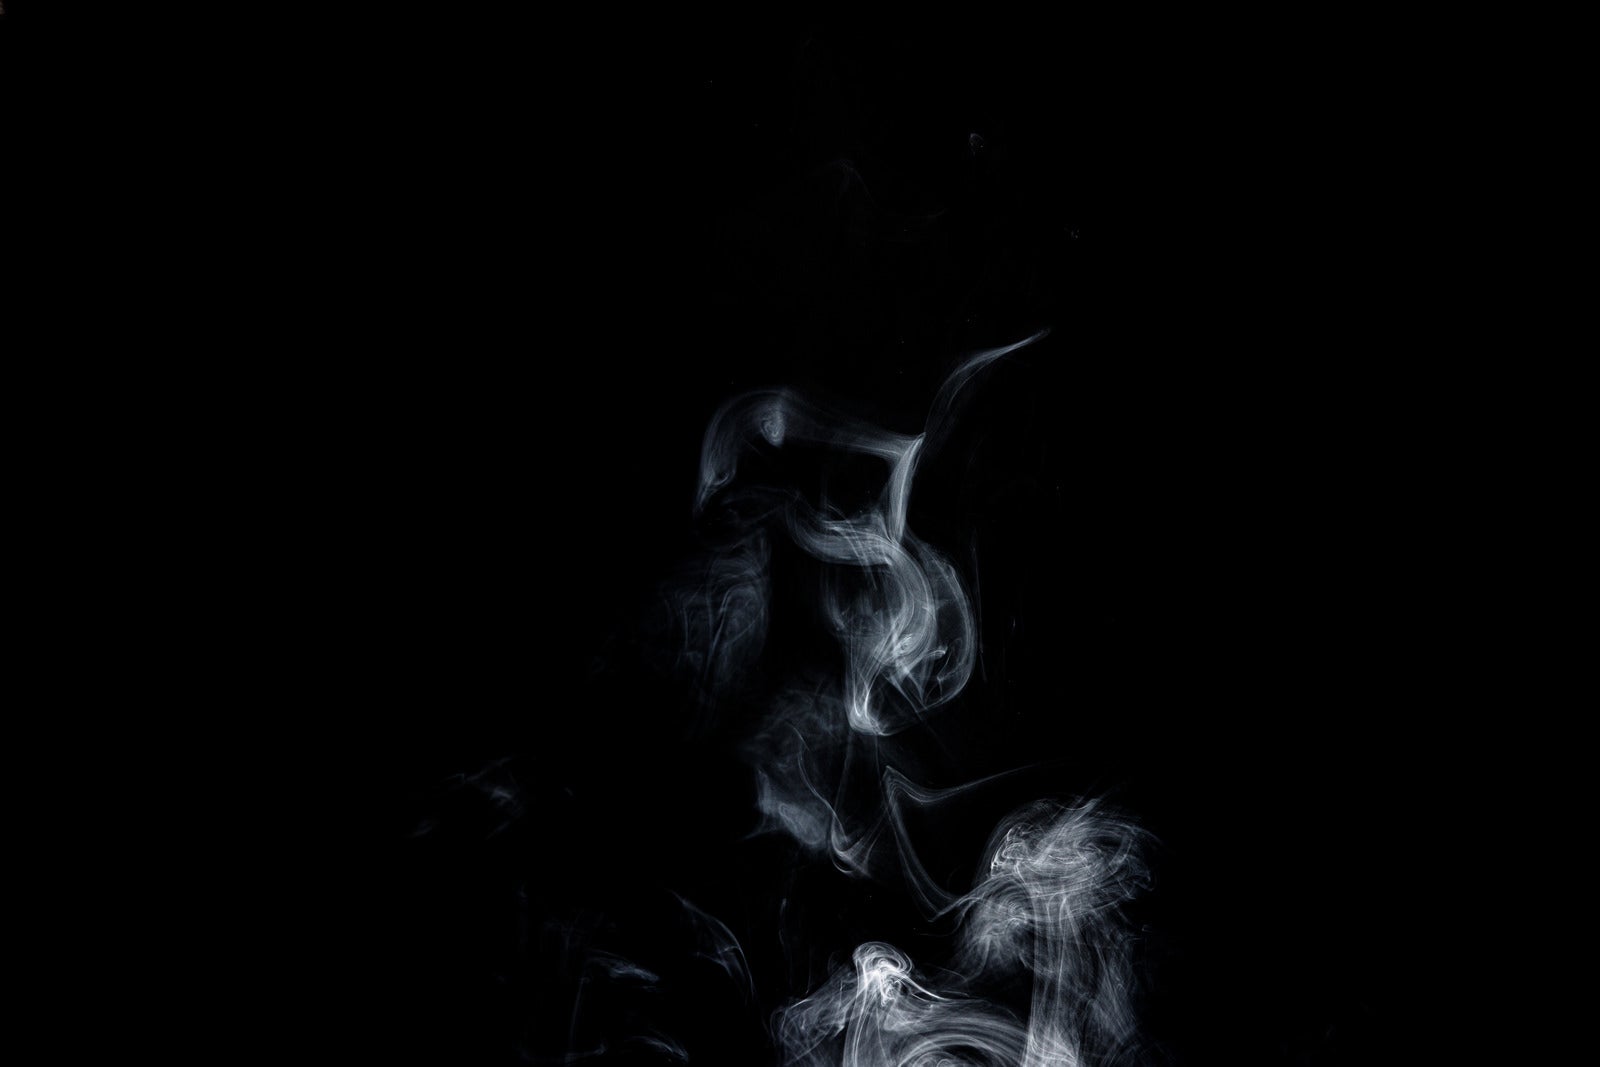 「ゆらゆら昇る白い煙」の写真